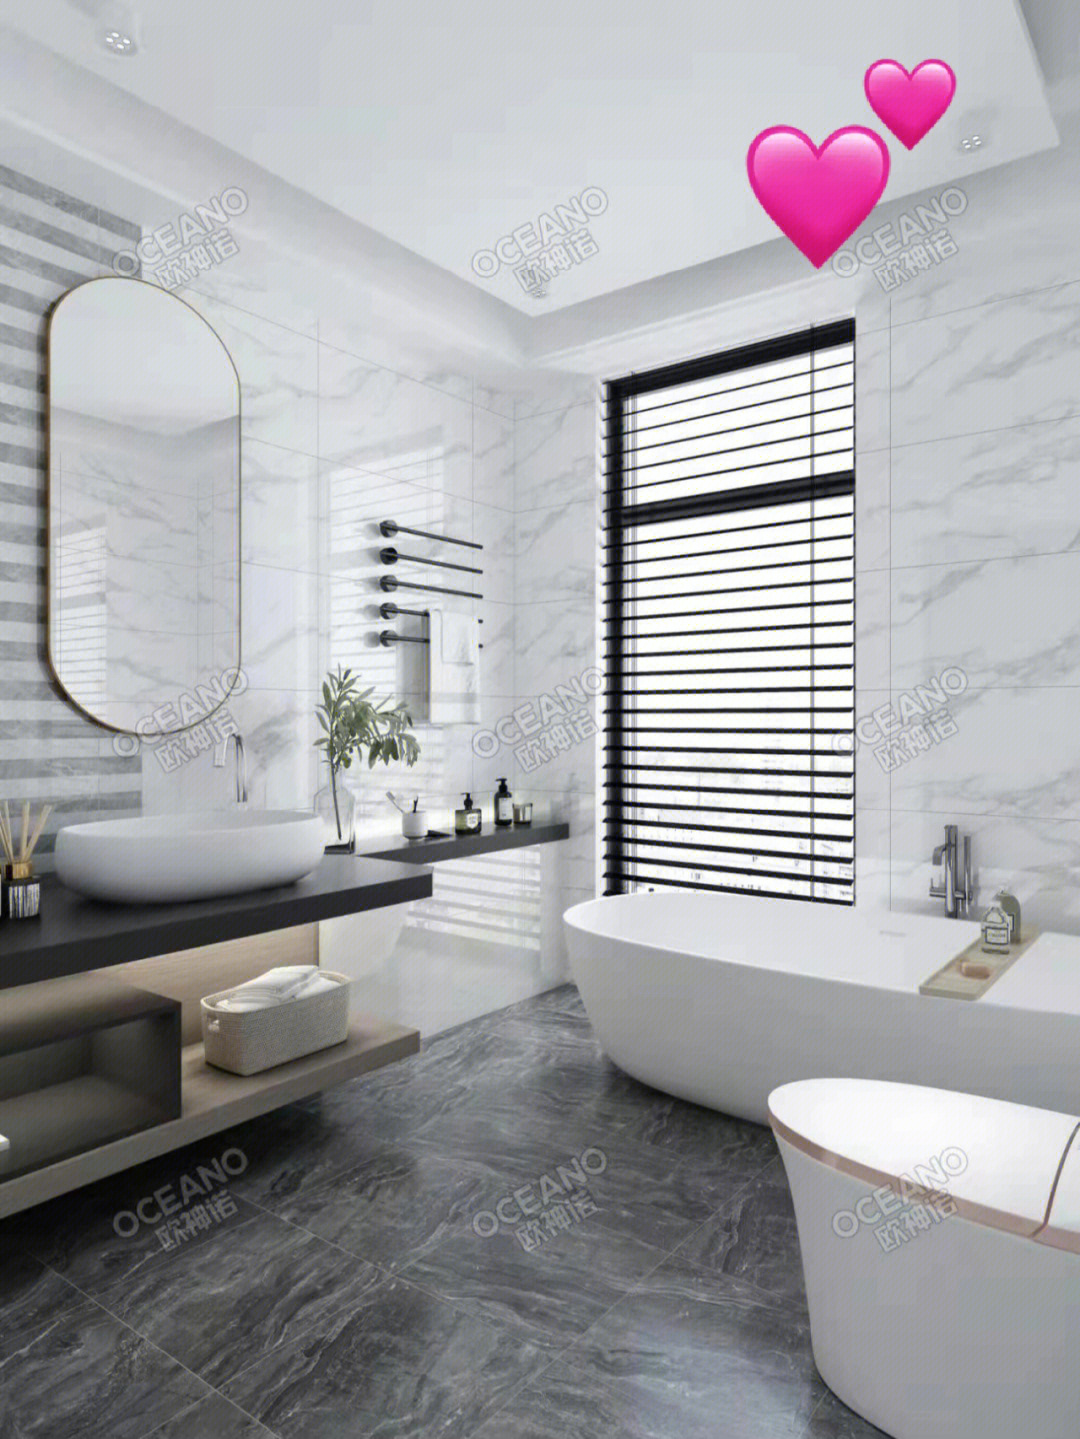 INAX伊奈×2019米兰设计周 新品诠释日式卫浴之美